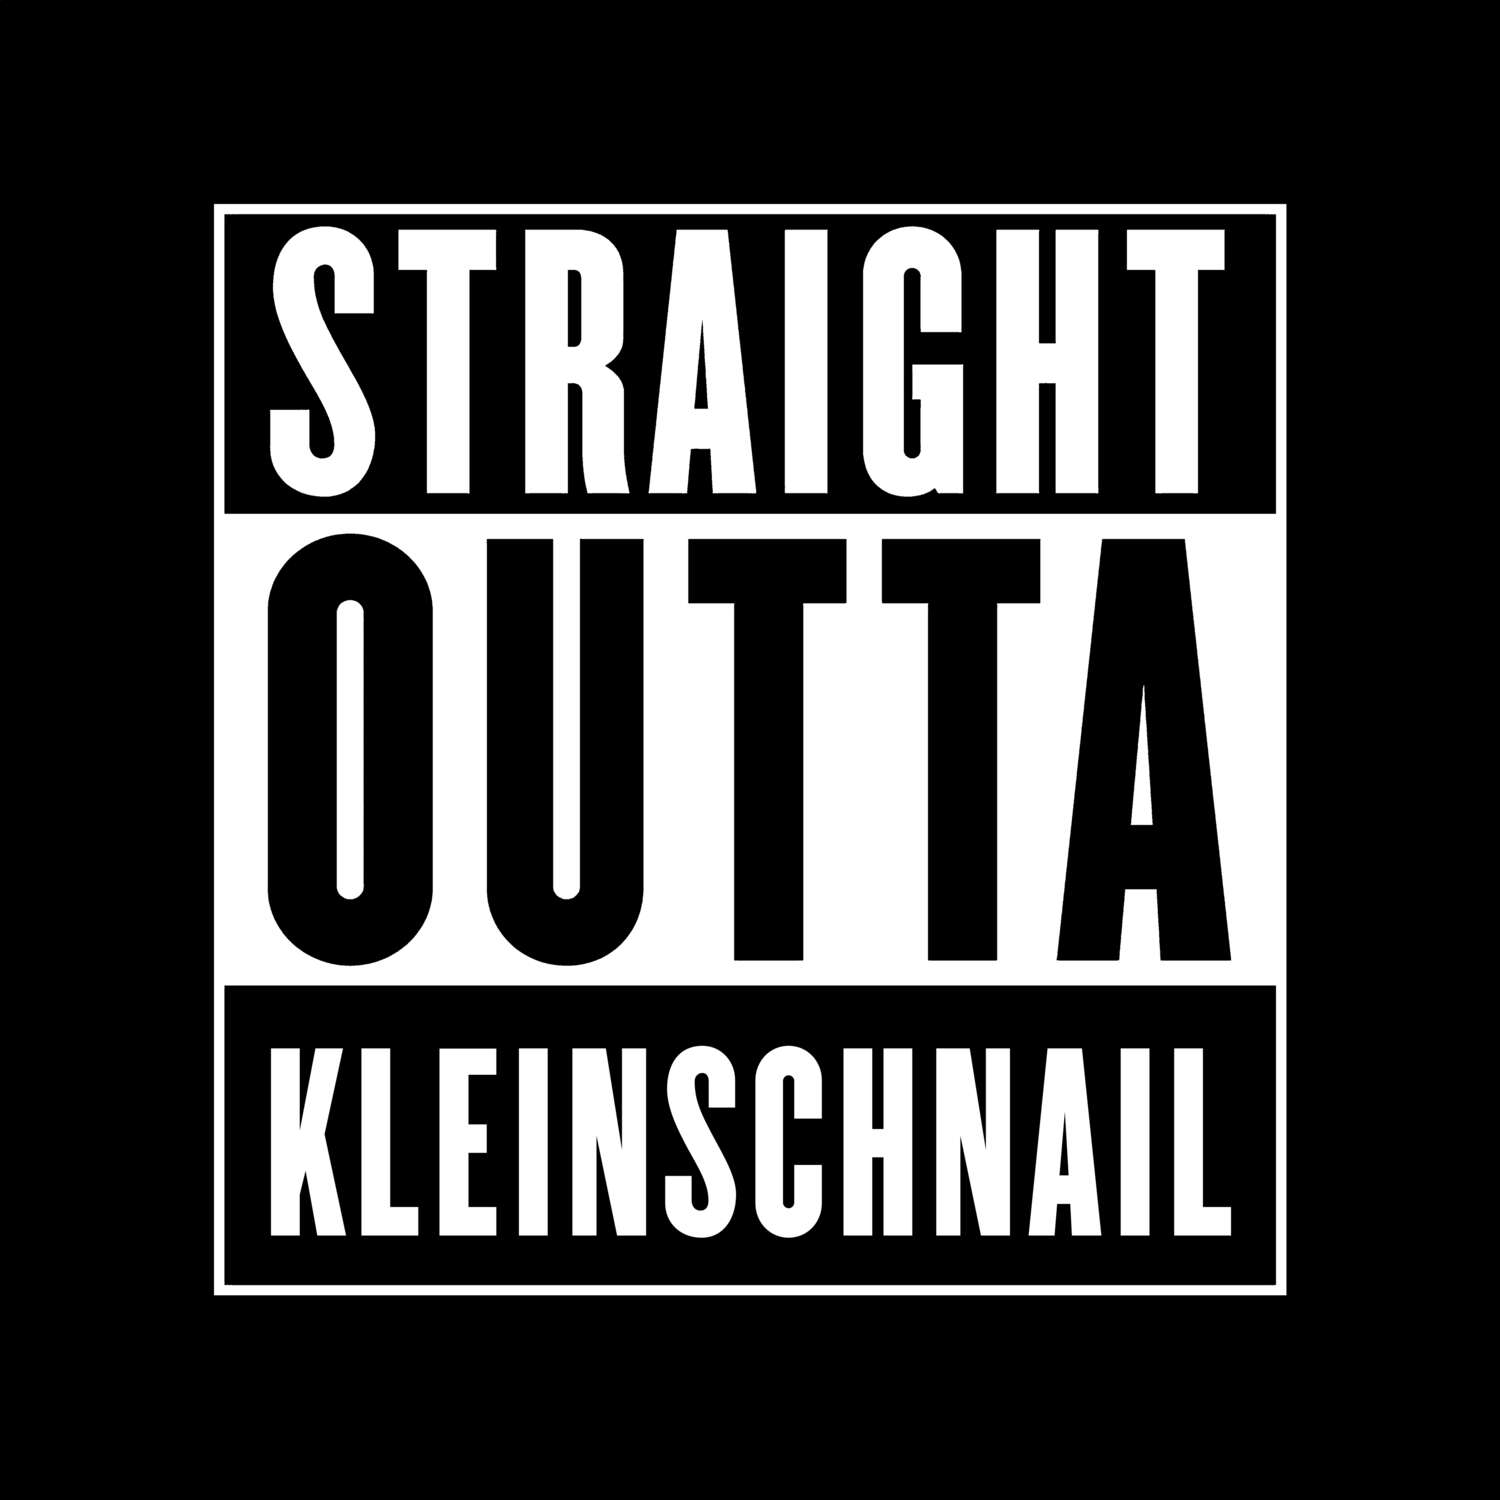 Kleinschnail T-Shirt »Straight Outta«